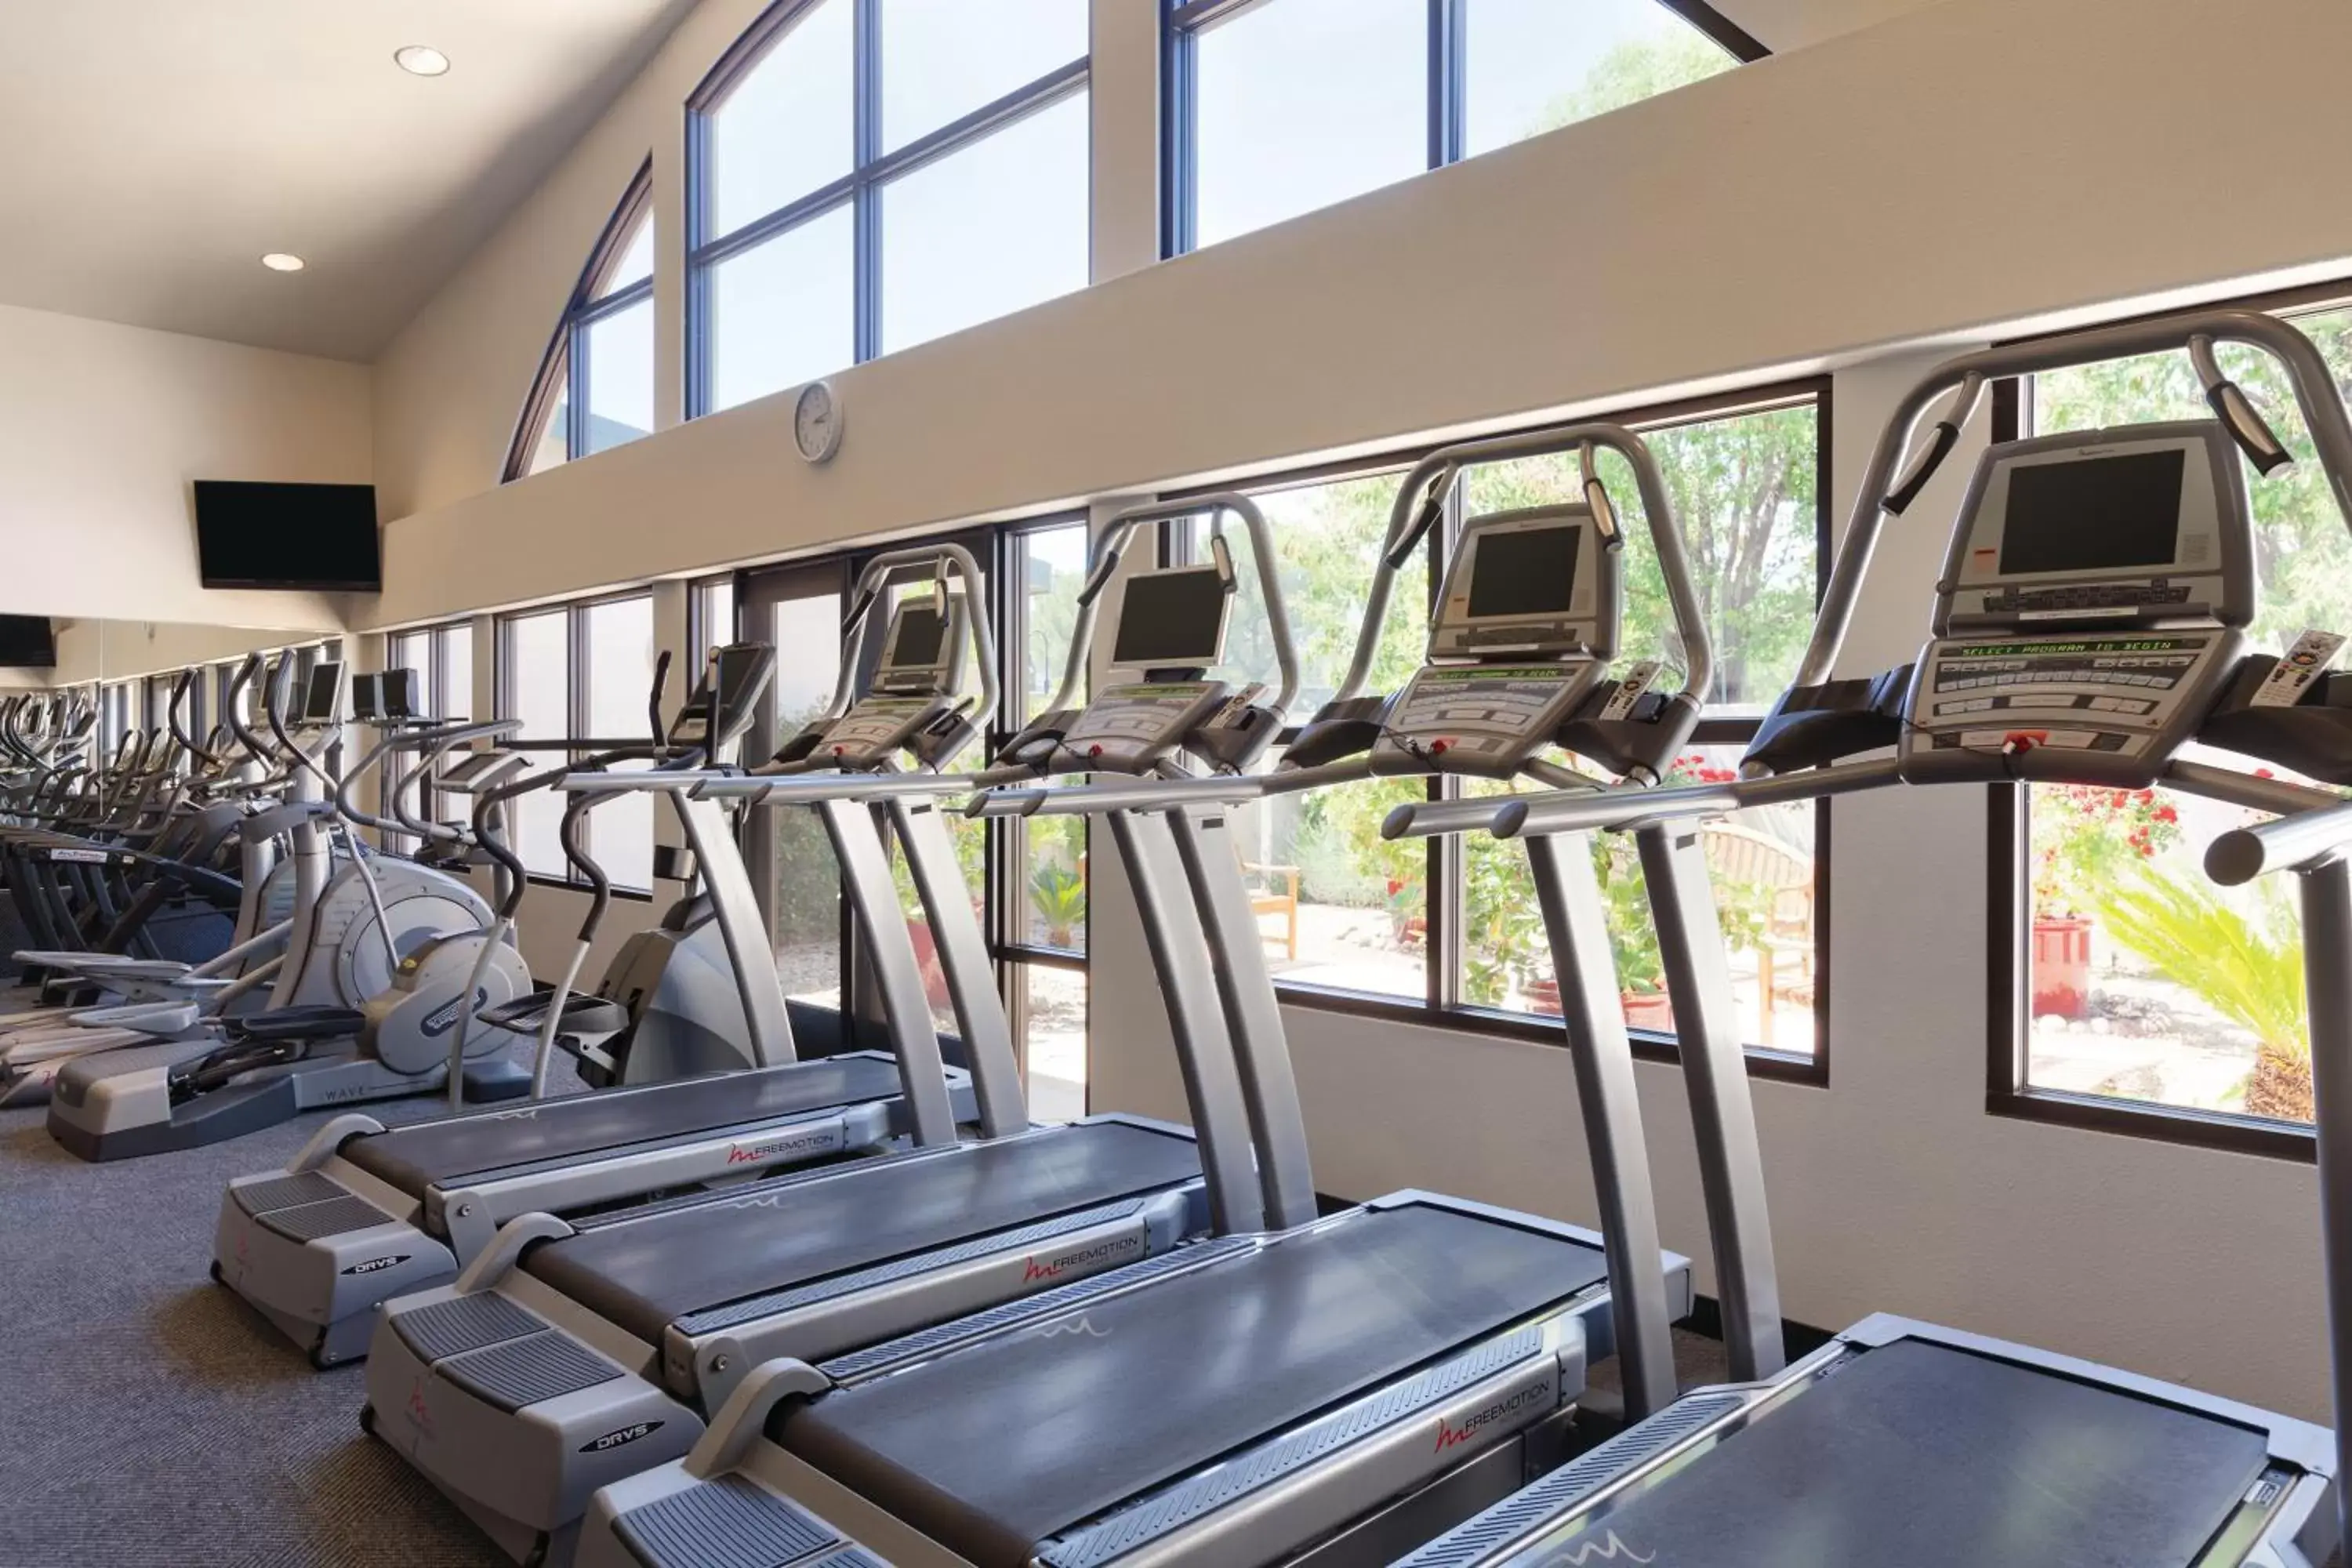 Fitness centre/facilities, Fitness Center/Facilities in Silverado Resort